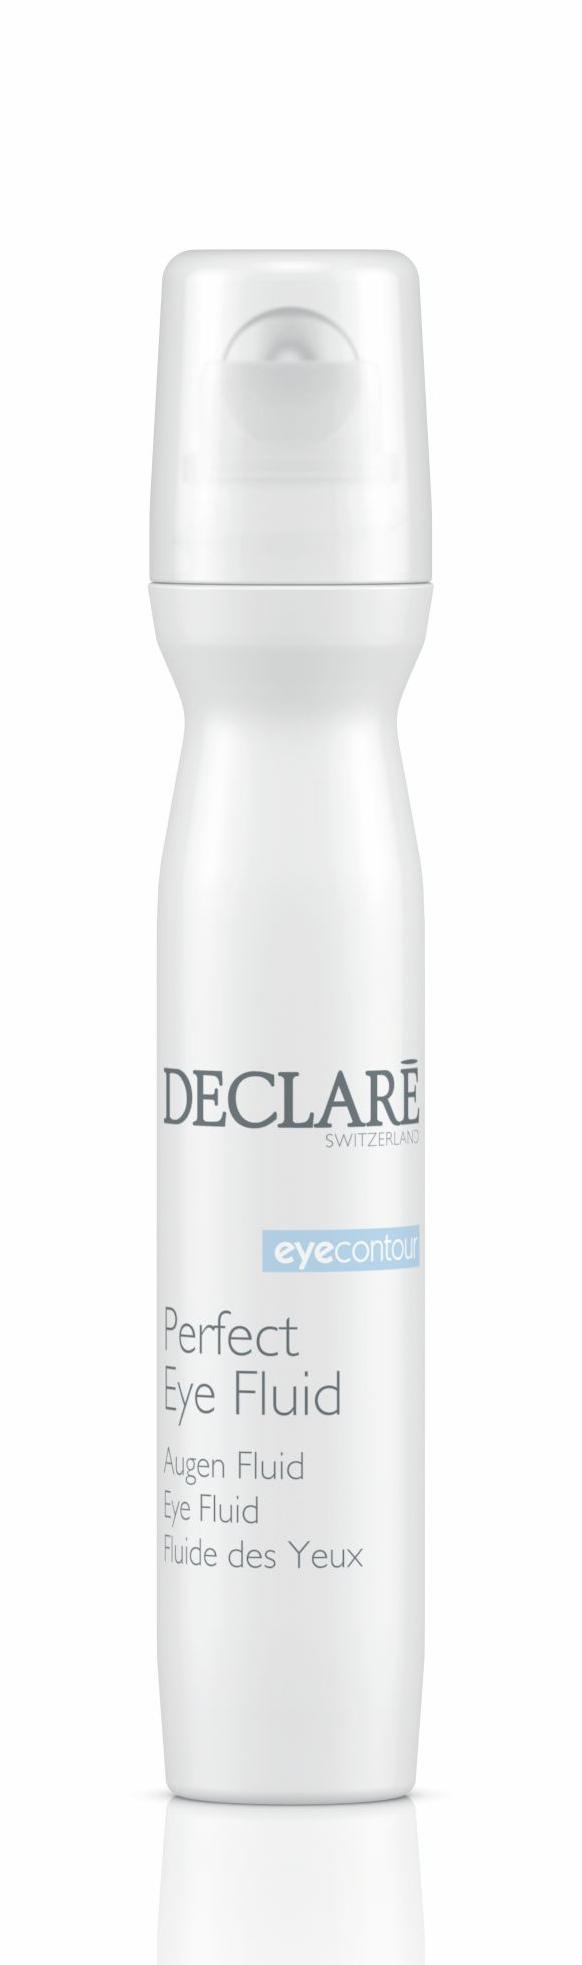 Perfect Eye Fluid Восстанавливающий гель для кожи вокруг глаз с массажным эффектом (ролик), 15 мл